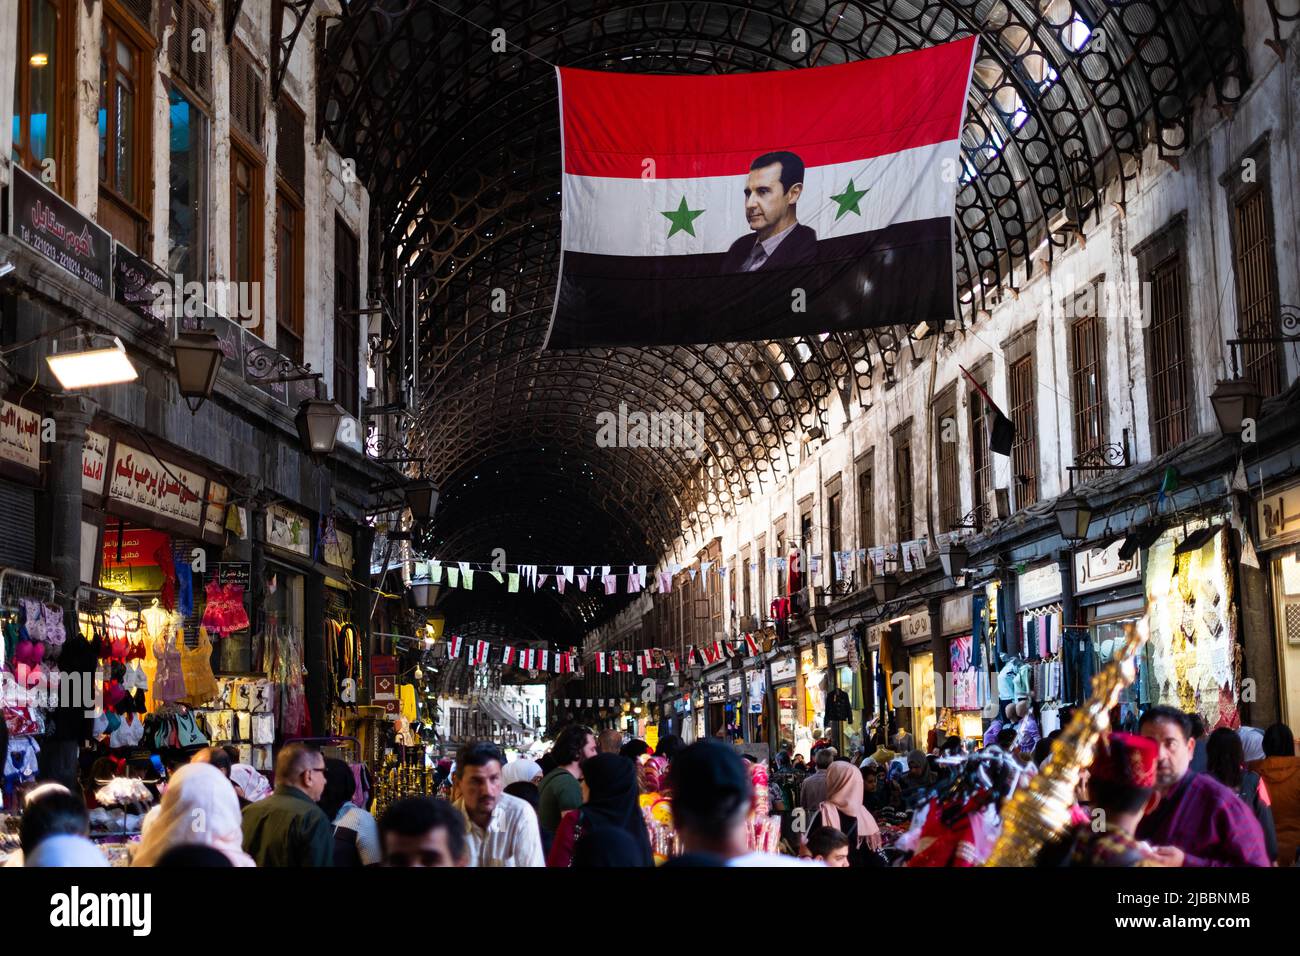 Damas, Syrie - Mai 2022 : portrait de Bachar el-Assad, président de la Syrie sur le drapeau syrien à Suq à Damas Banque D'Images